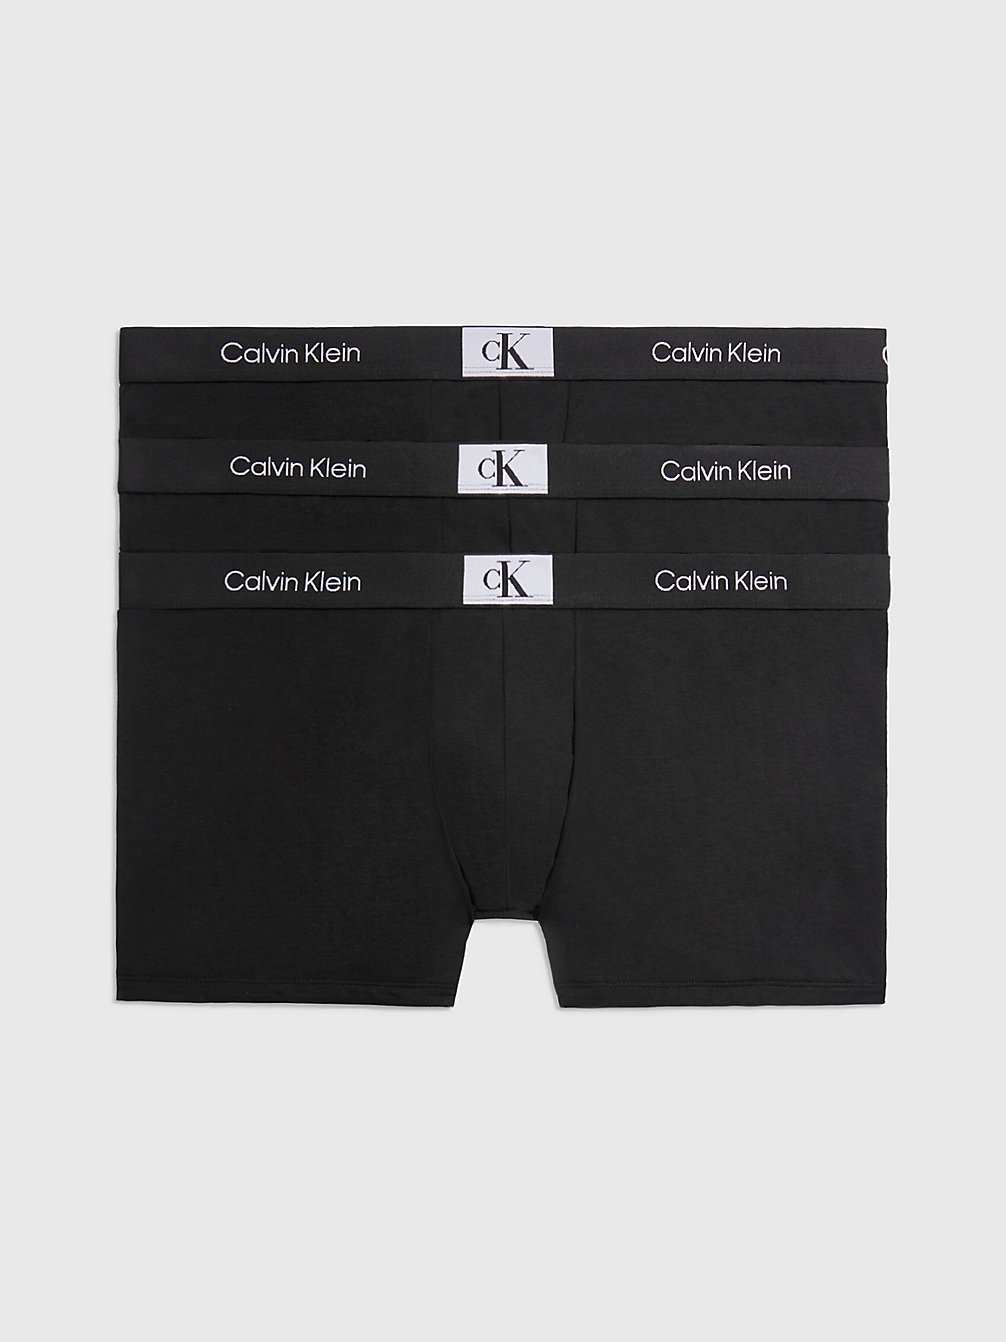 BLACK/ BLACK/ BLACK > Plus Size 3 Pack Trunks - Ck96 > undefined женщины - Calvin Klein